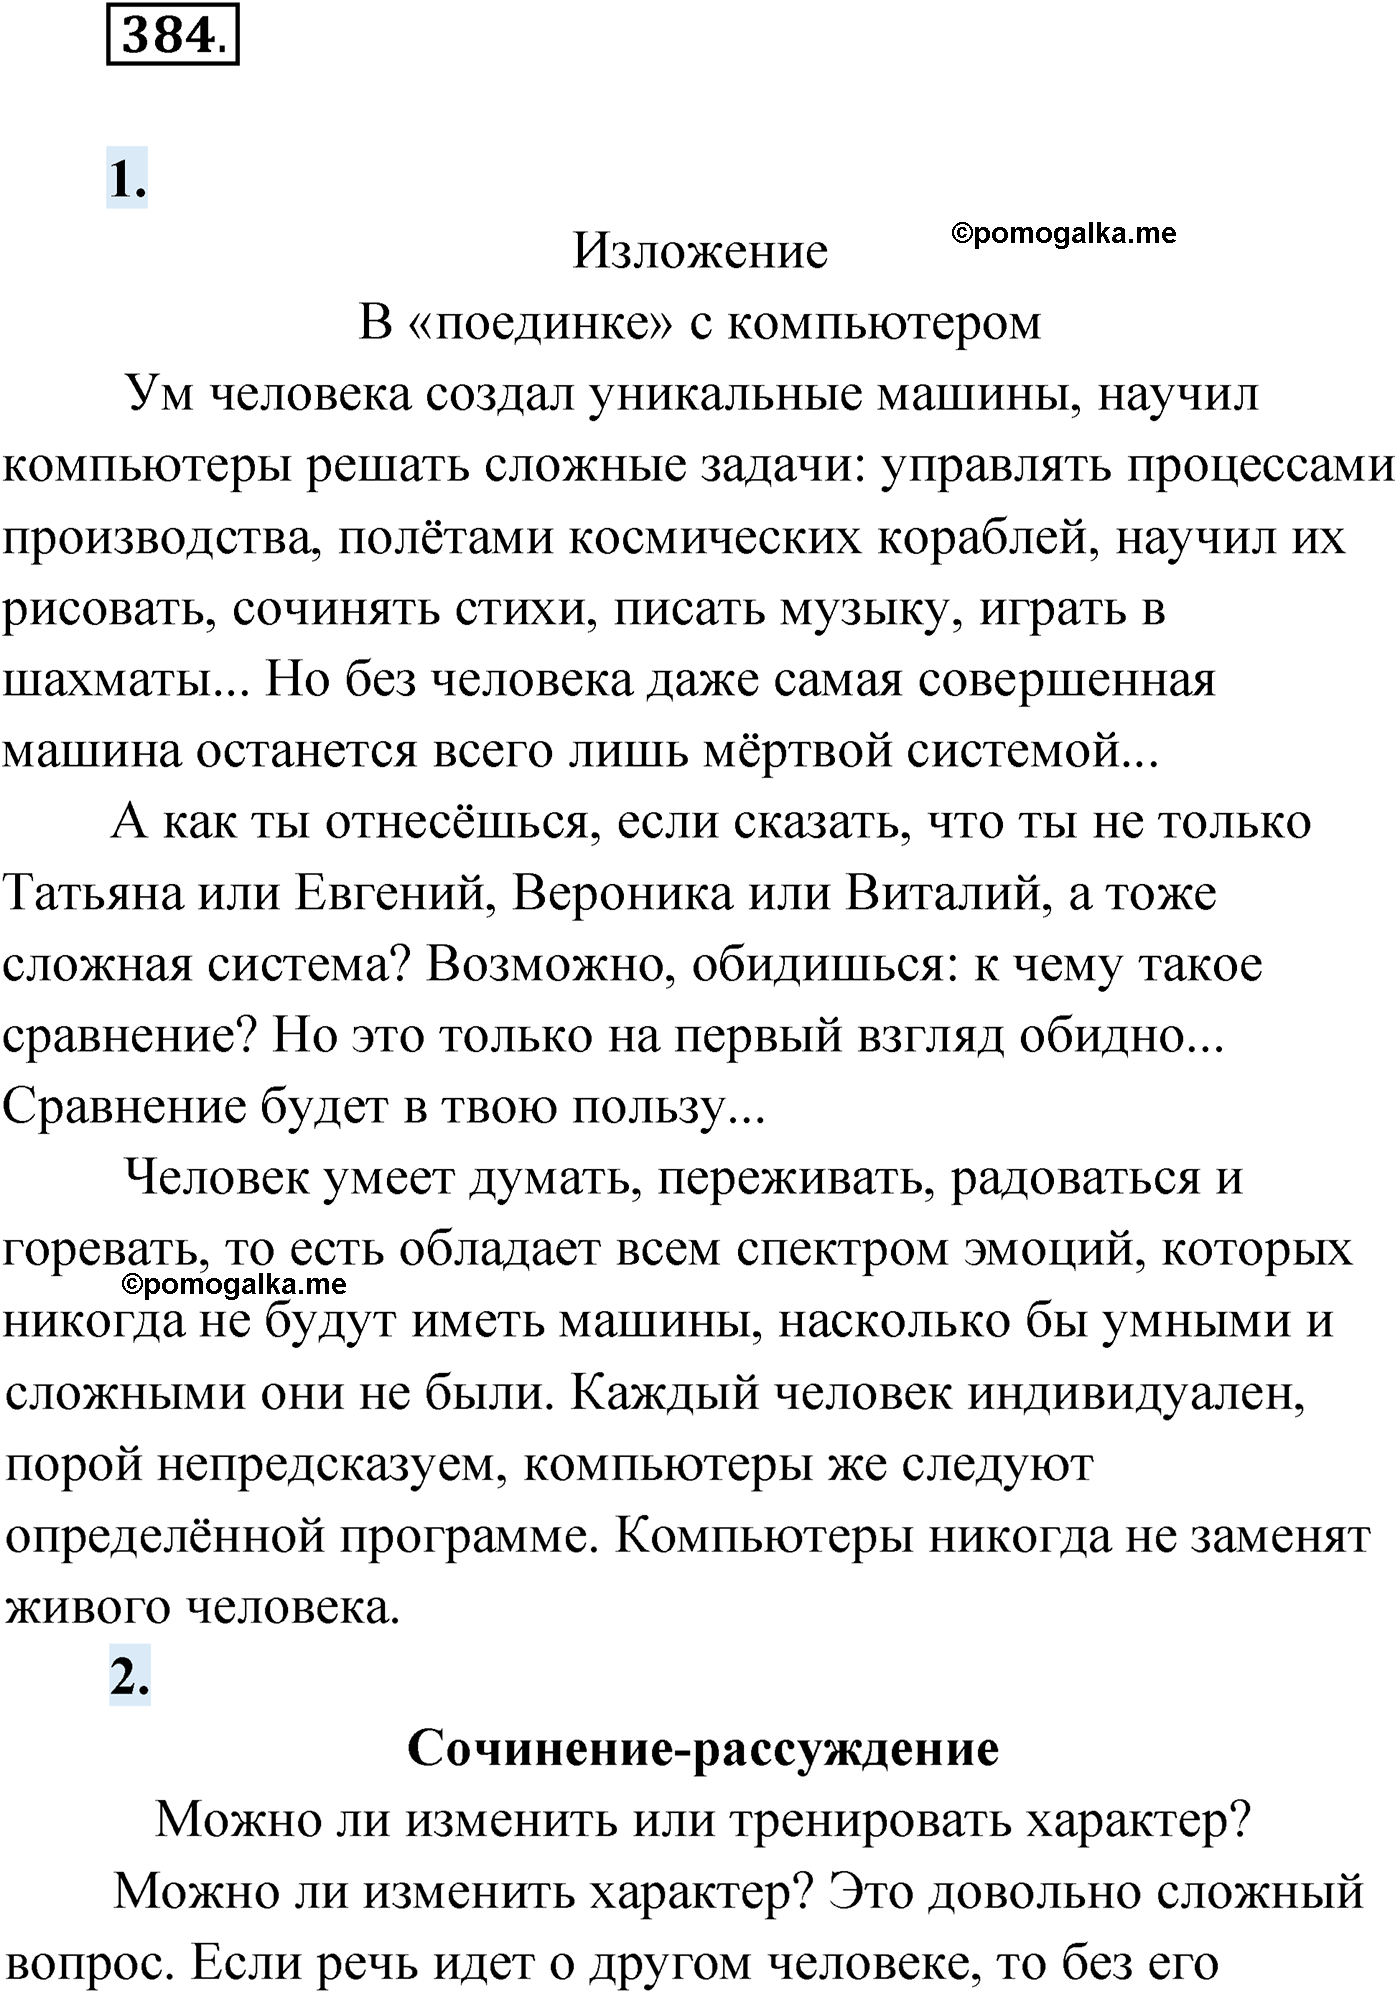 упражнение №384 русский язык 9 класс Мурина 2019 год